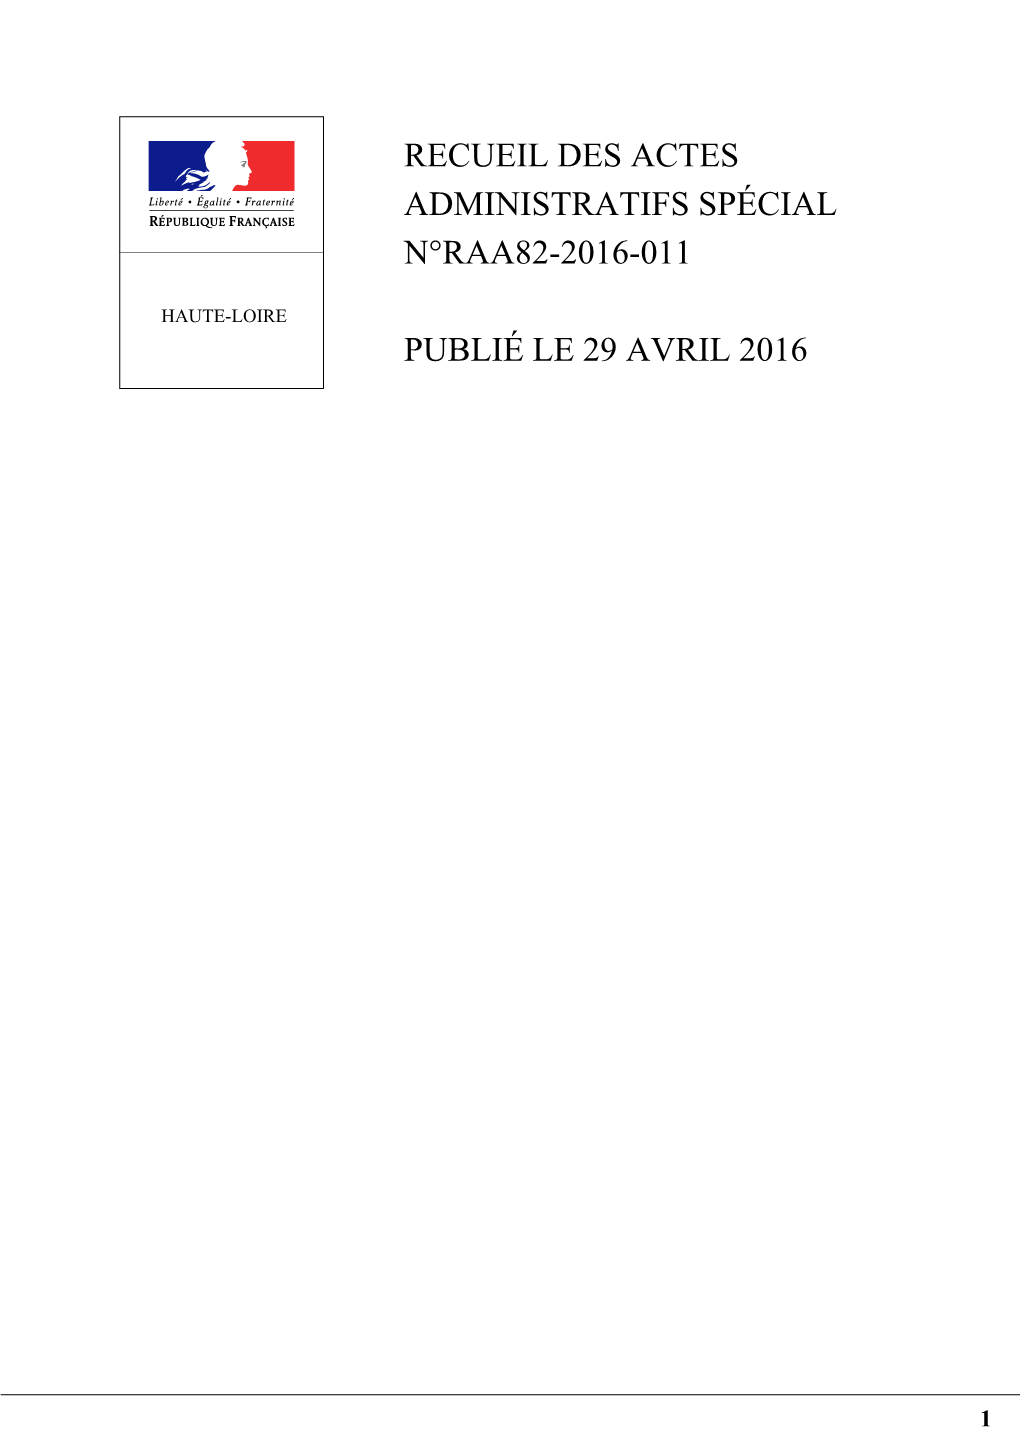 Recueil Des Actes Administratifs Spécial N°Raa82-2016-011 Publié Le 29